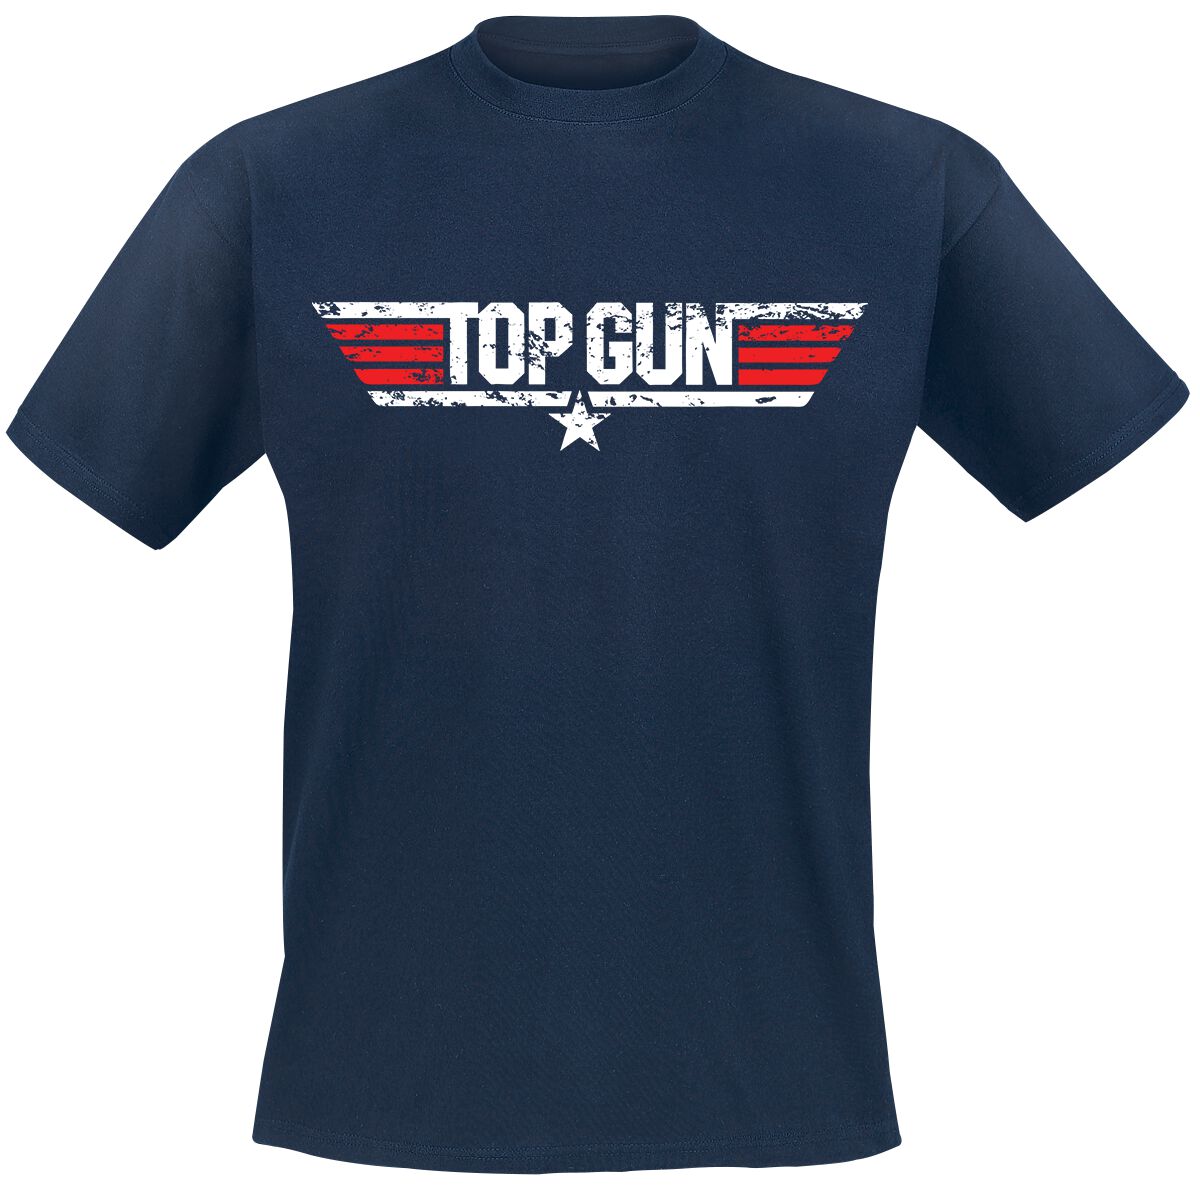 Top Gun Distressed Logo T-Shirt navy in M